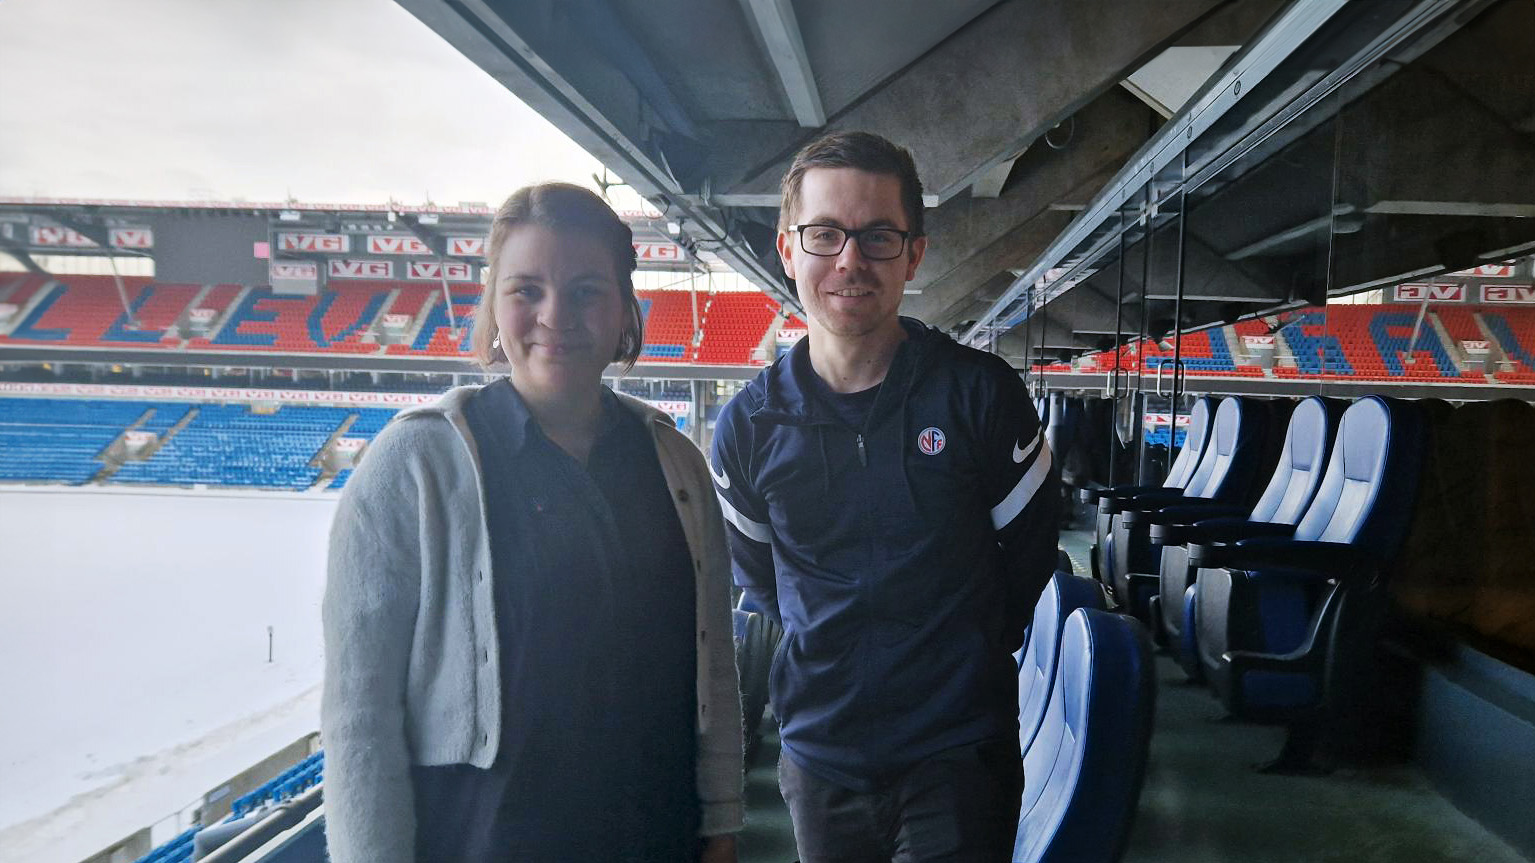 Ragnhild og Rasmus står på tribunen på ullevåll stadion og smiler til kamera.